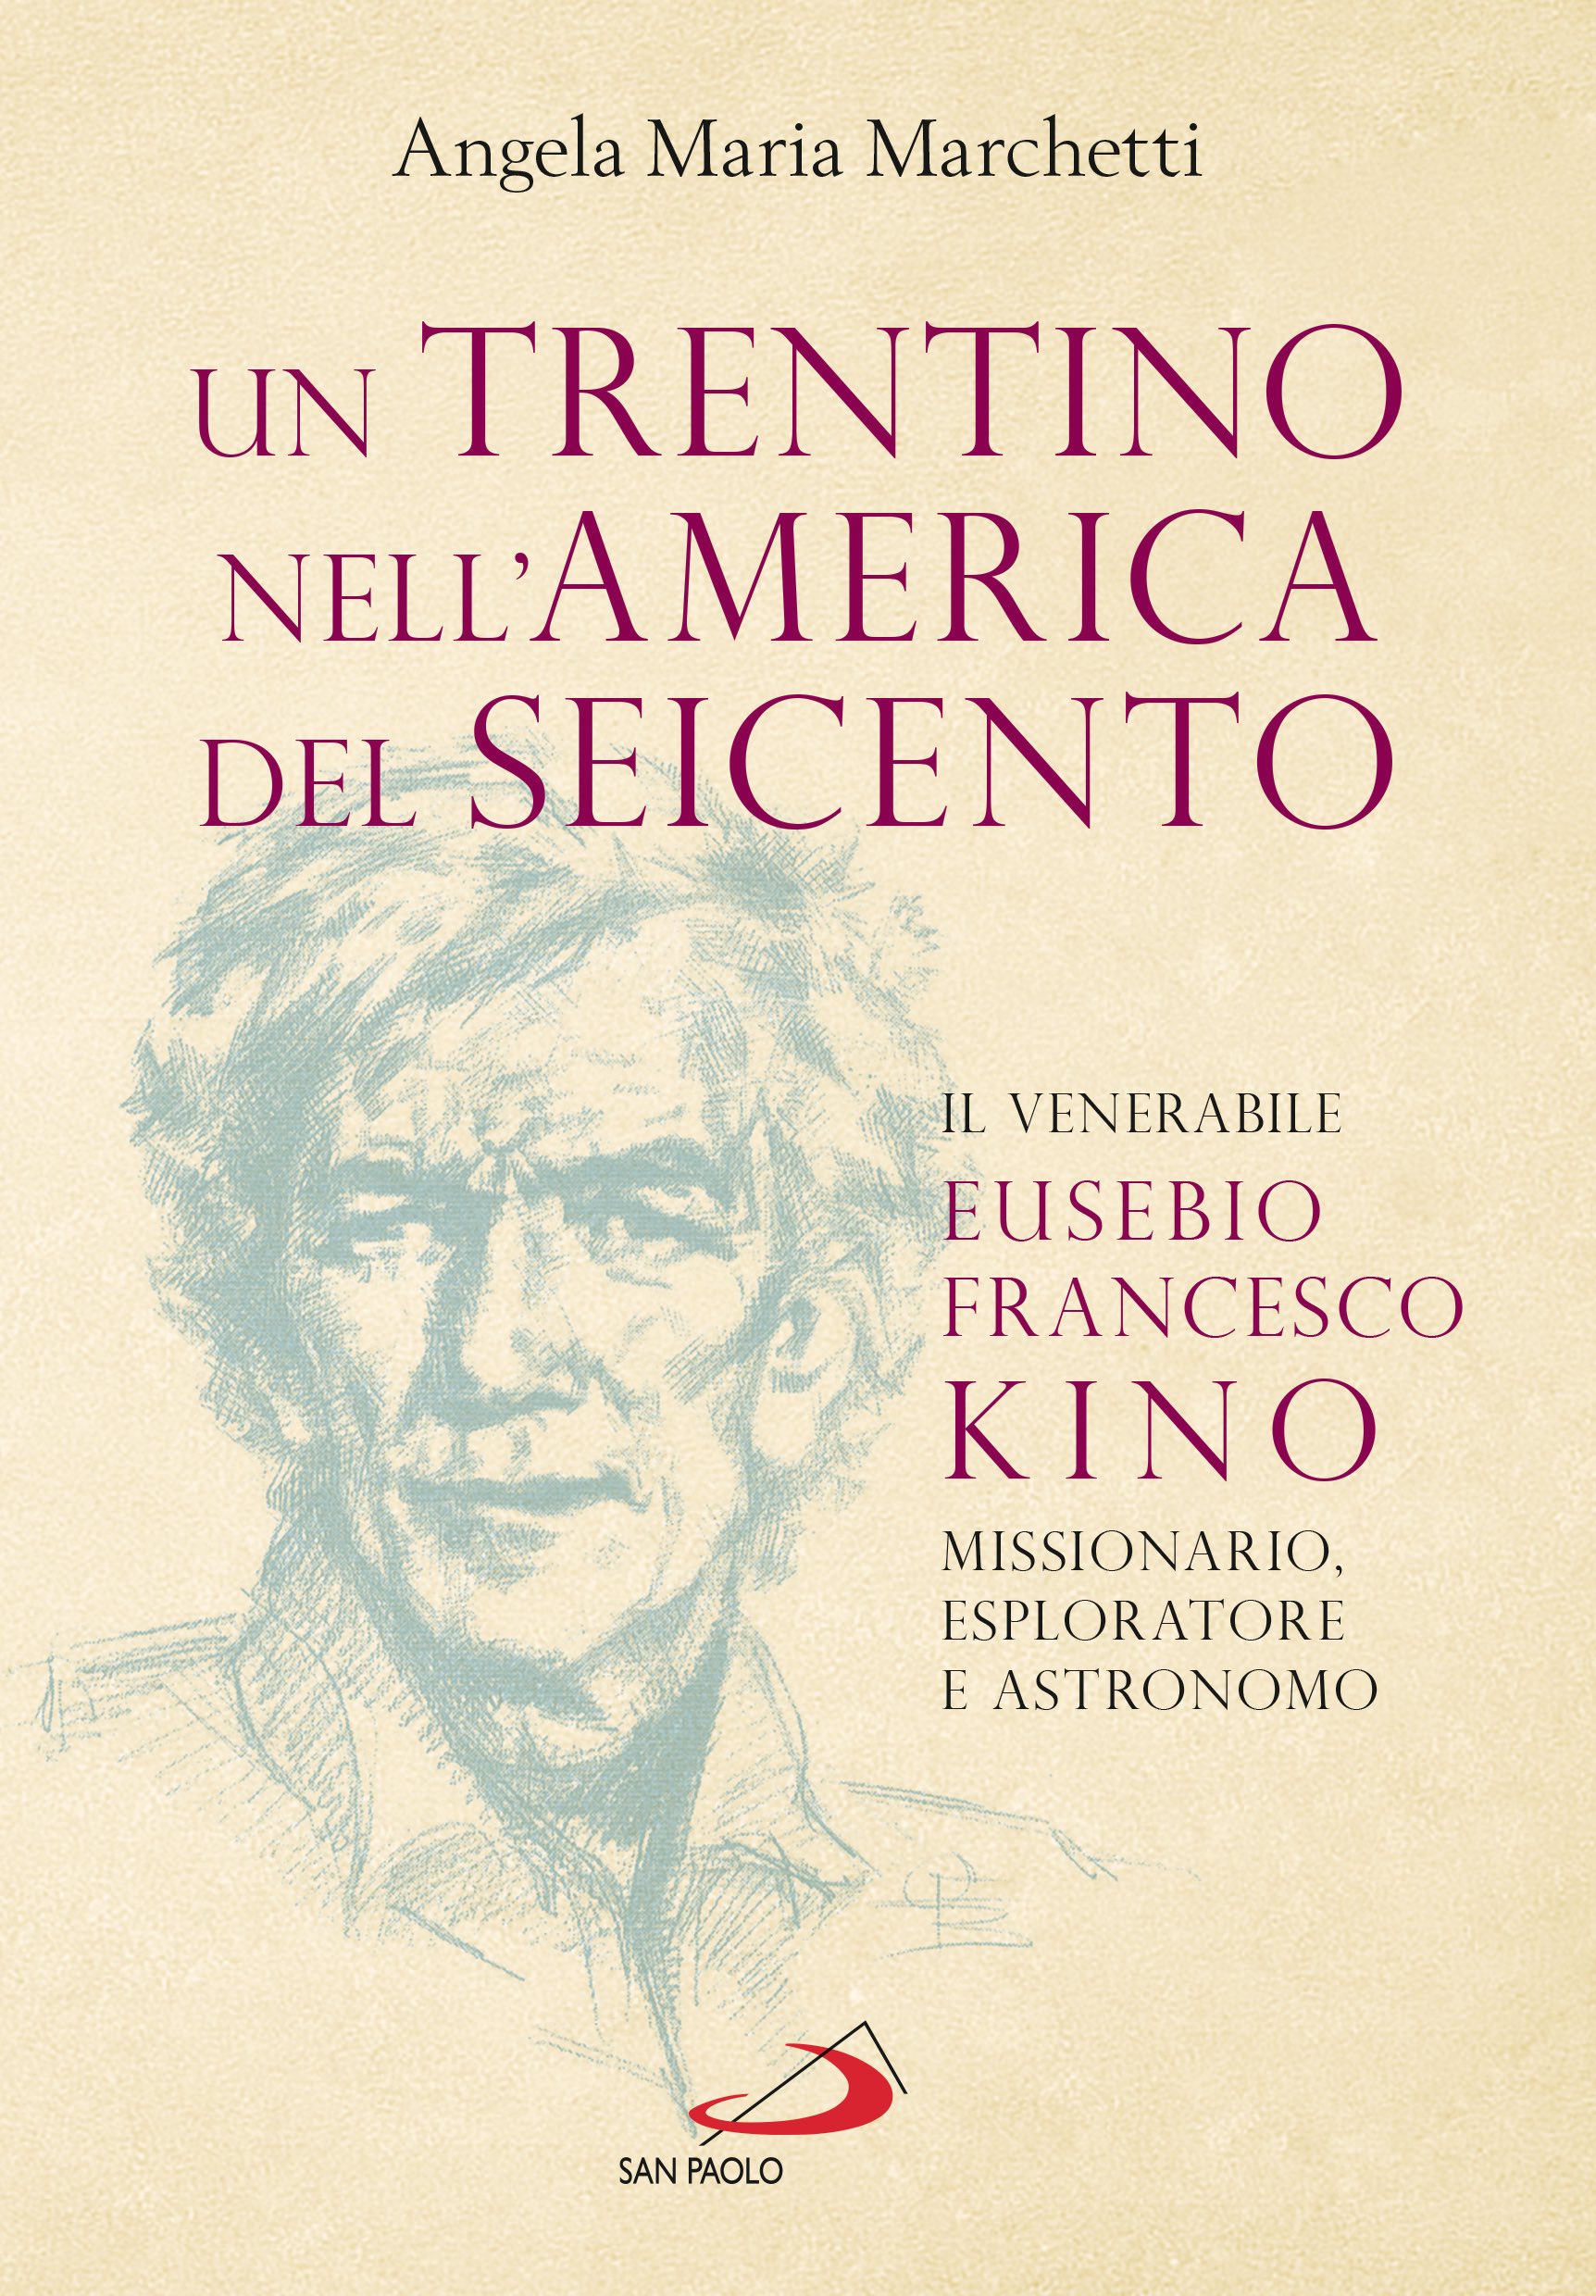 copertina del libro un Trentino nell'America del Seicento (seconda edizione)